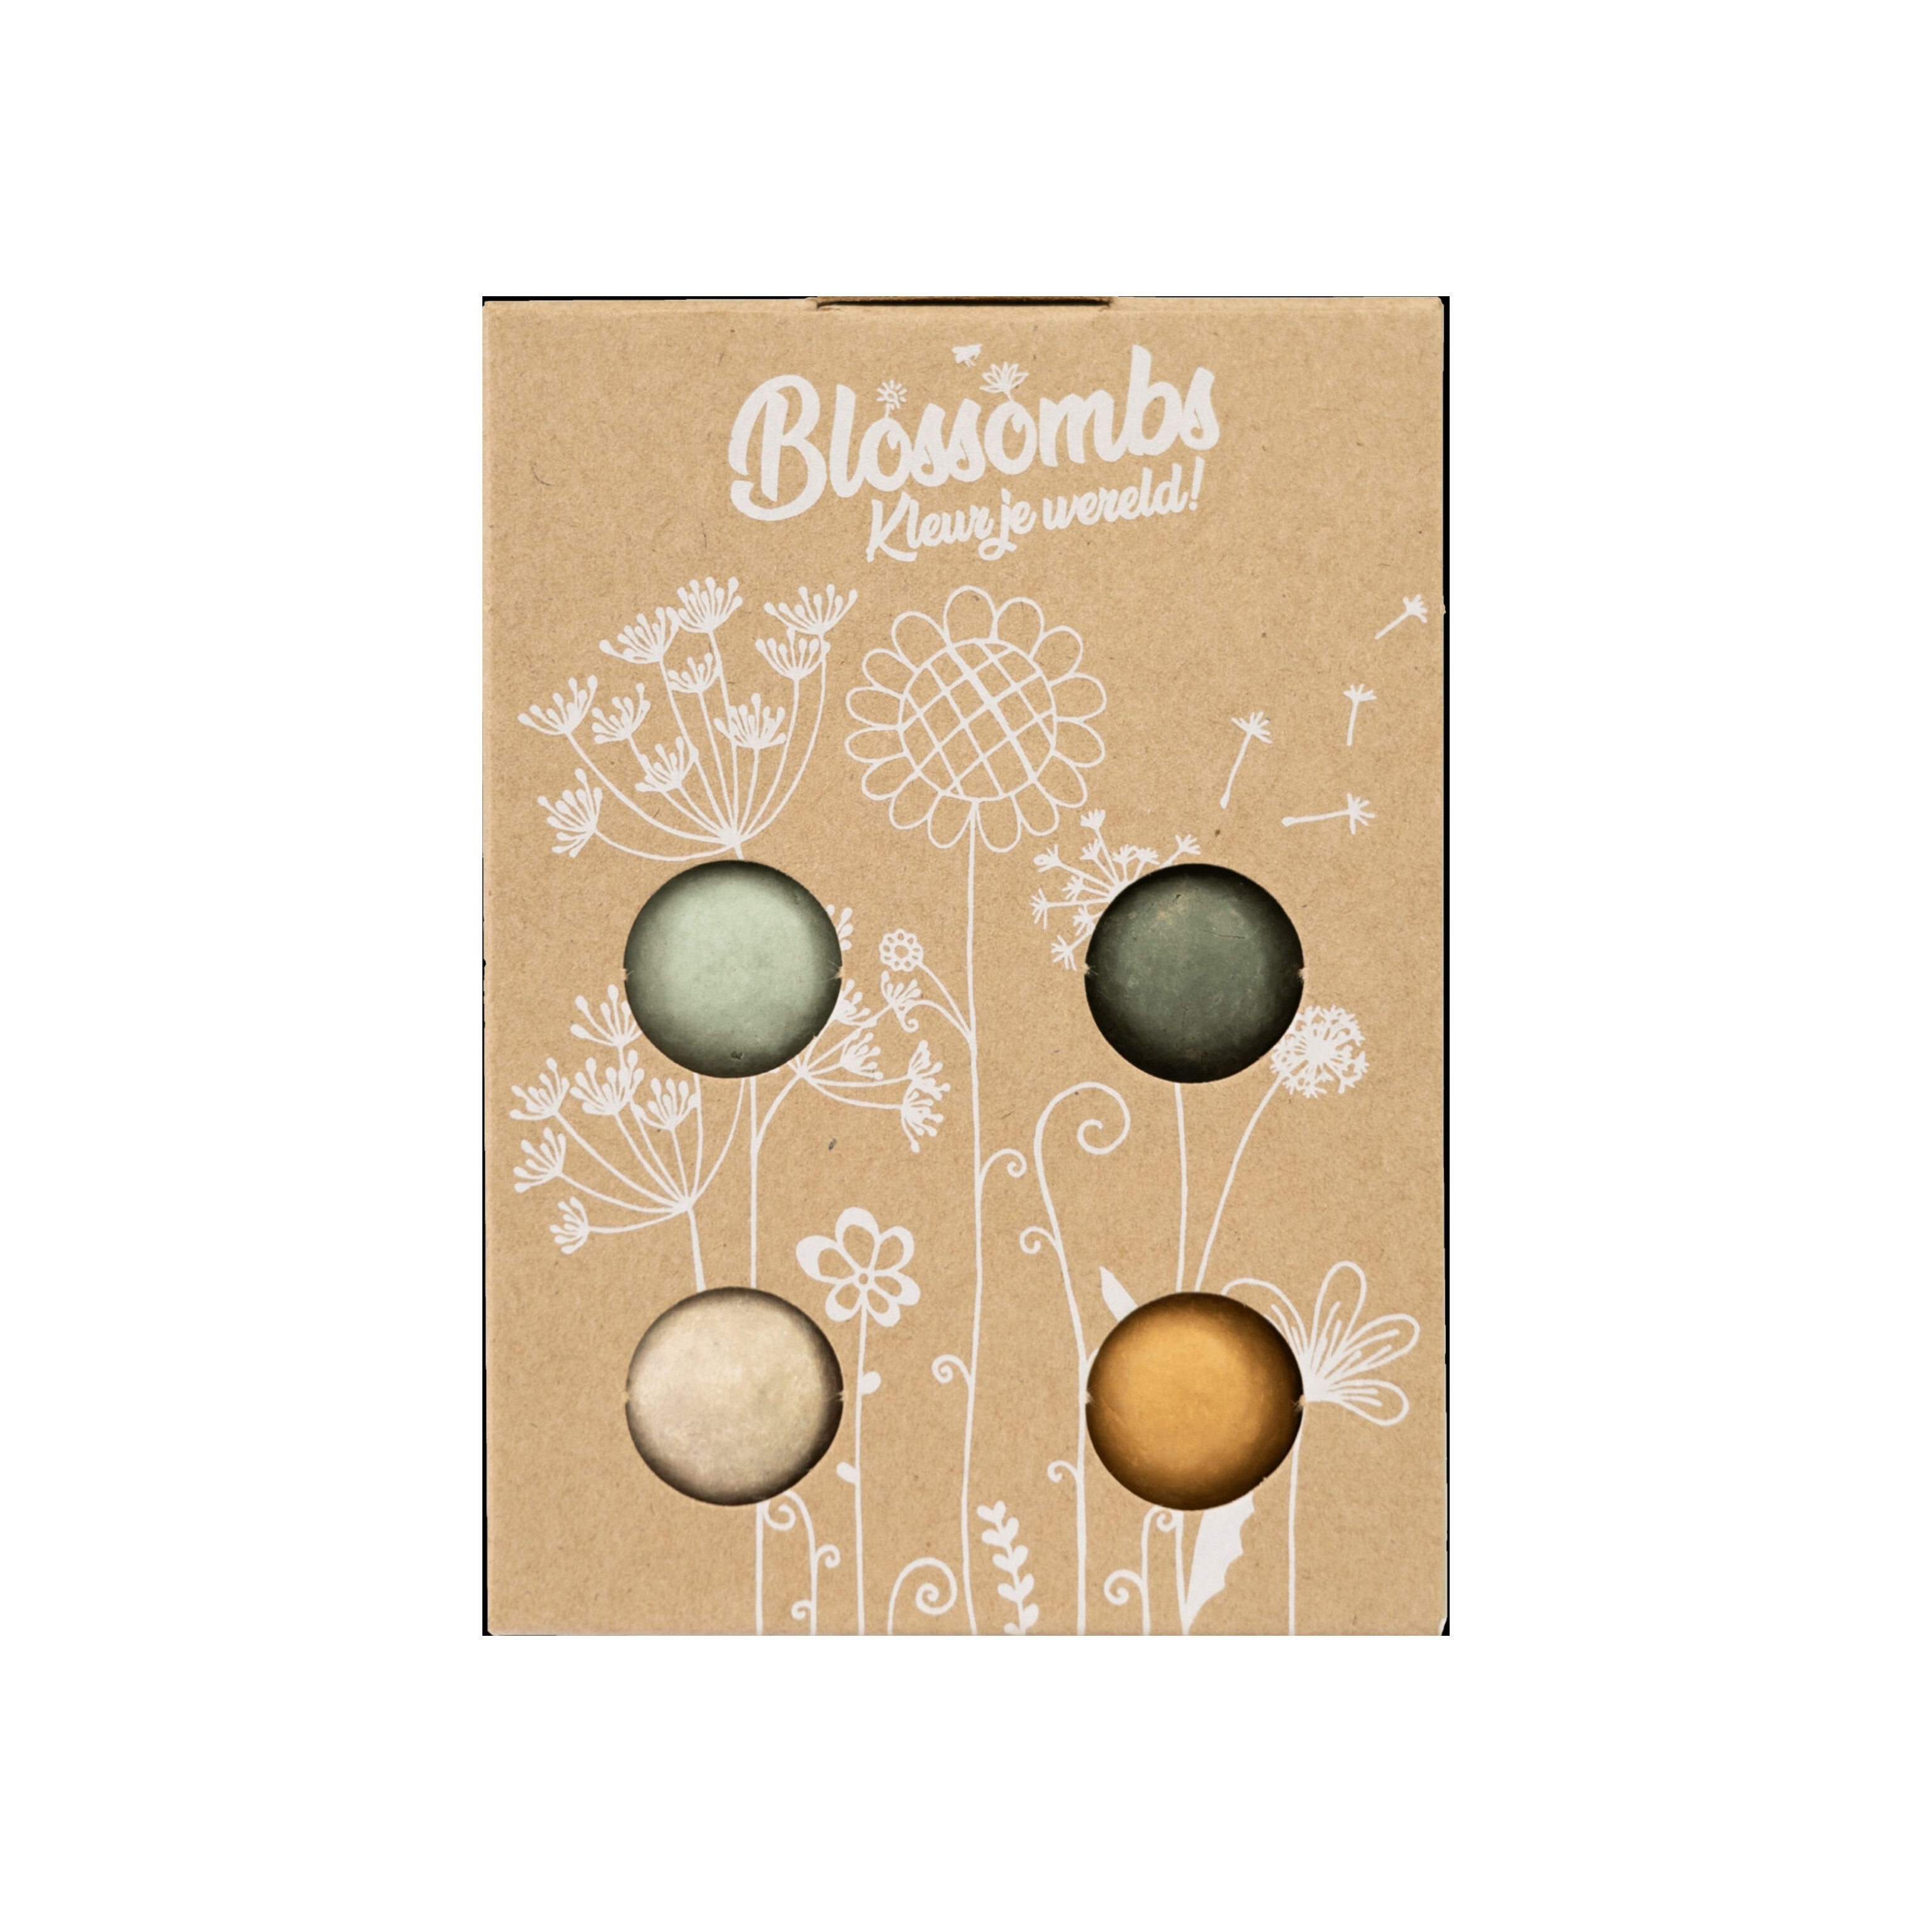 Zaadbommetjes Giftbox Mini 4 stuks - Blossombs